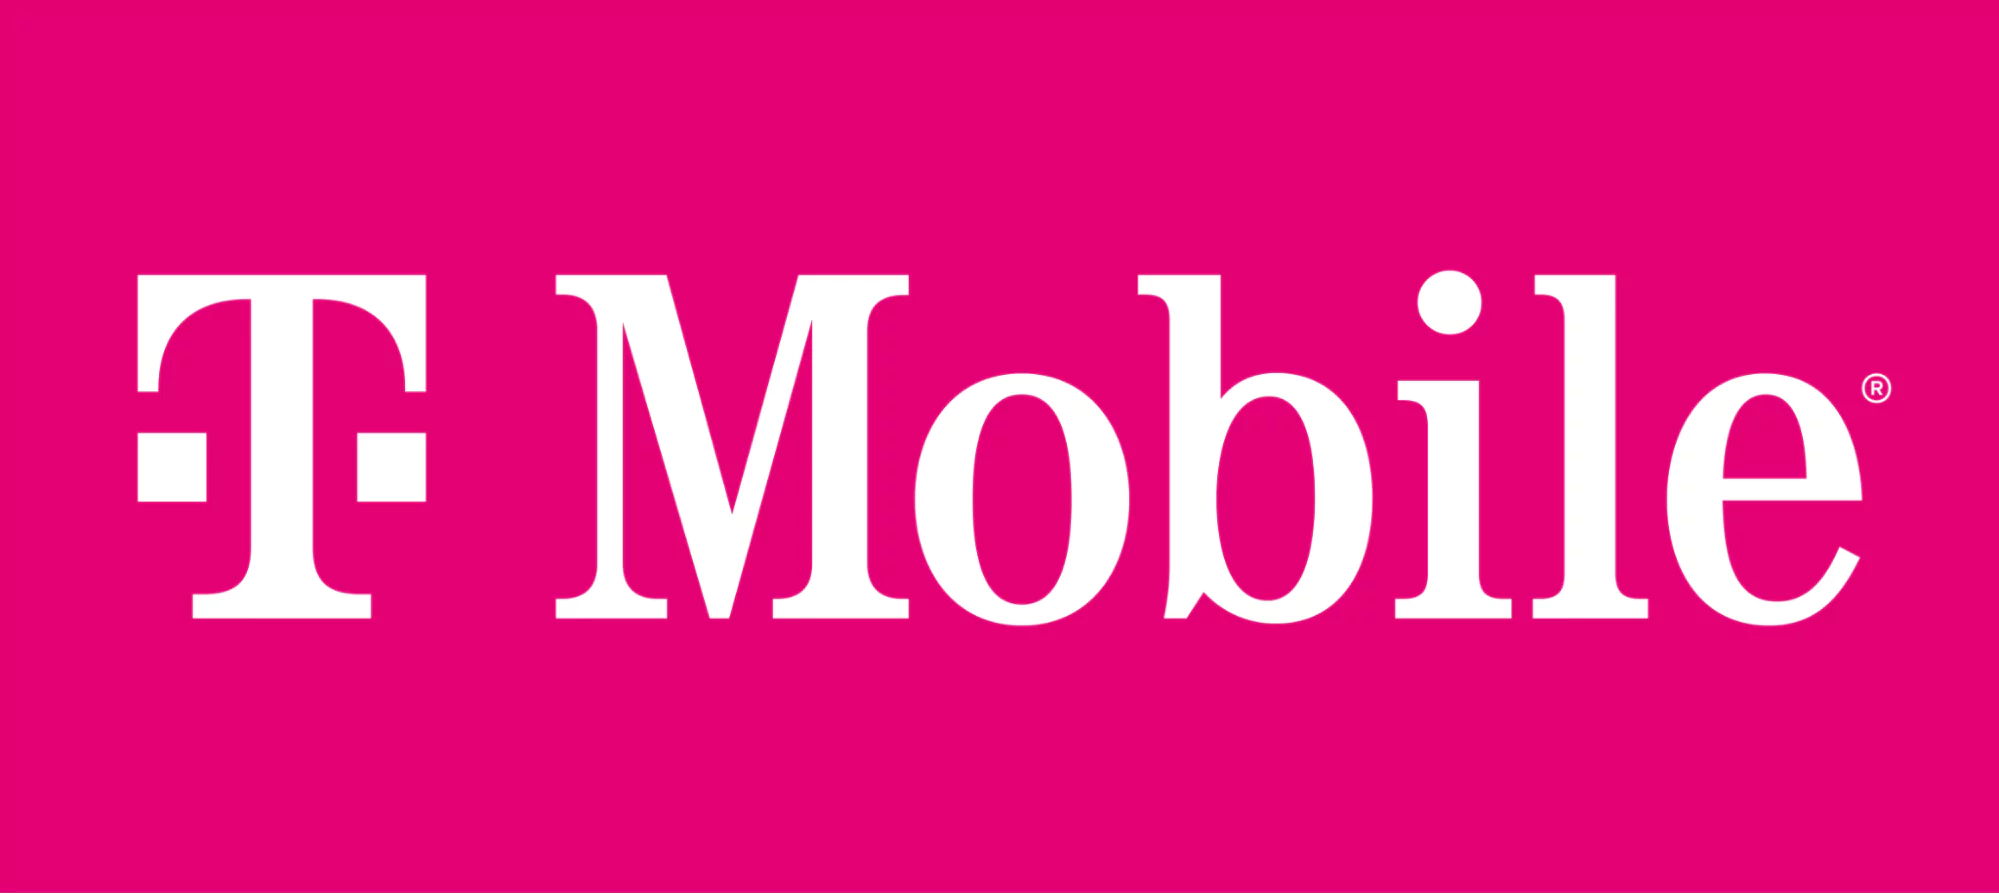 Logotipo magenta de T-Mobile con el texto en blanco